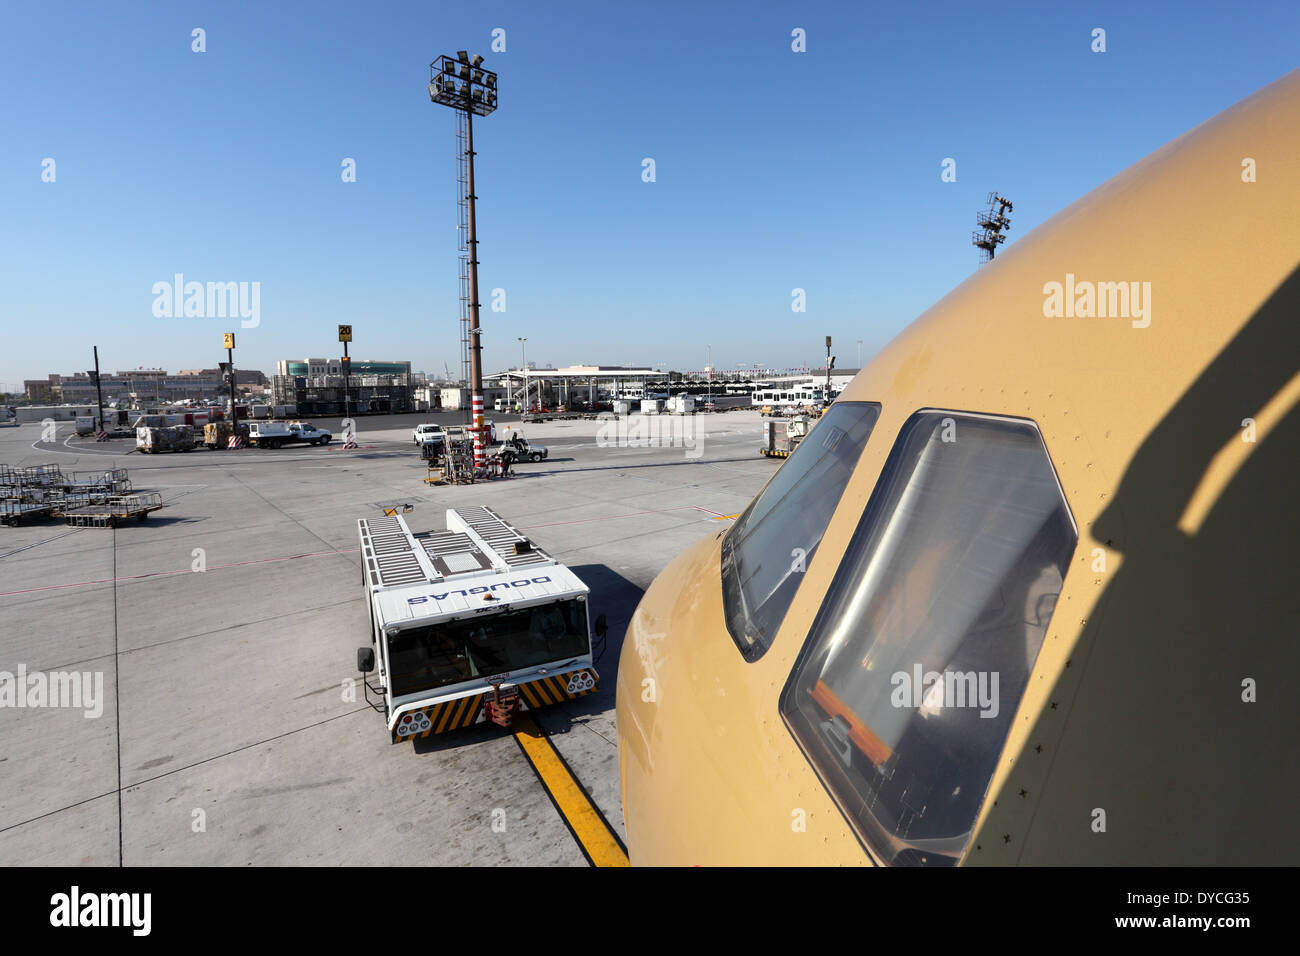 Gulf Air aereo all'Aeroporto di Manama. Regno del Bahrein, Medio Oriente Foto Stock